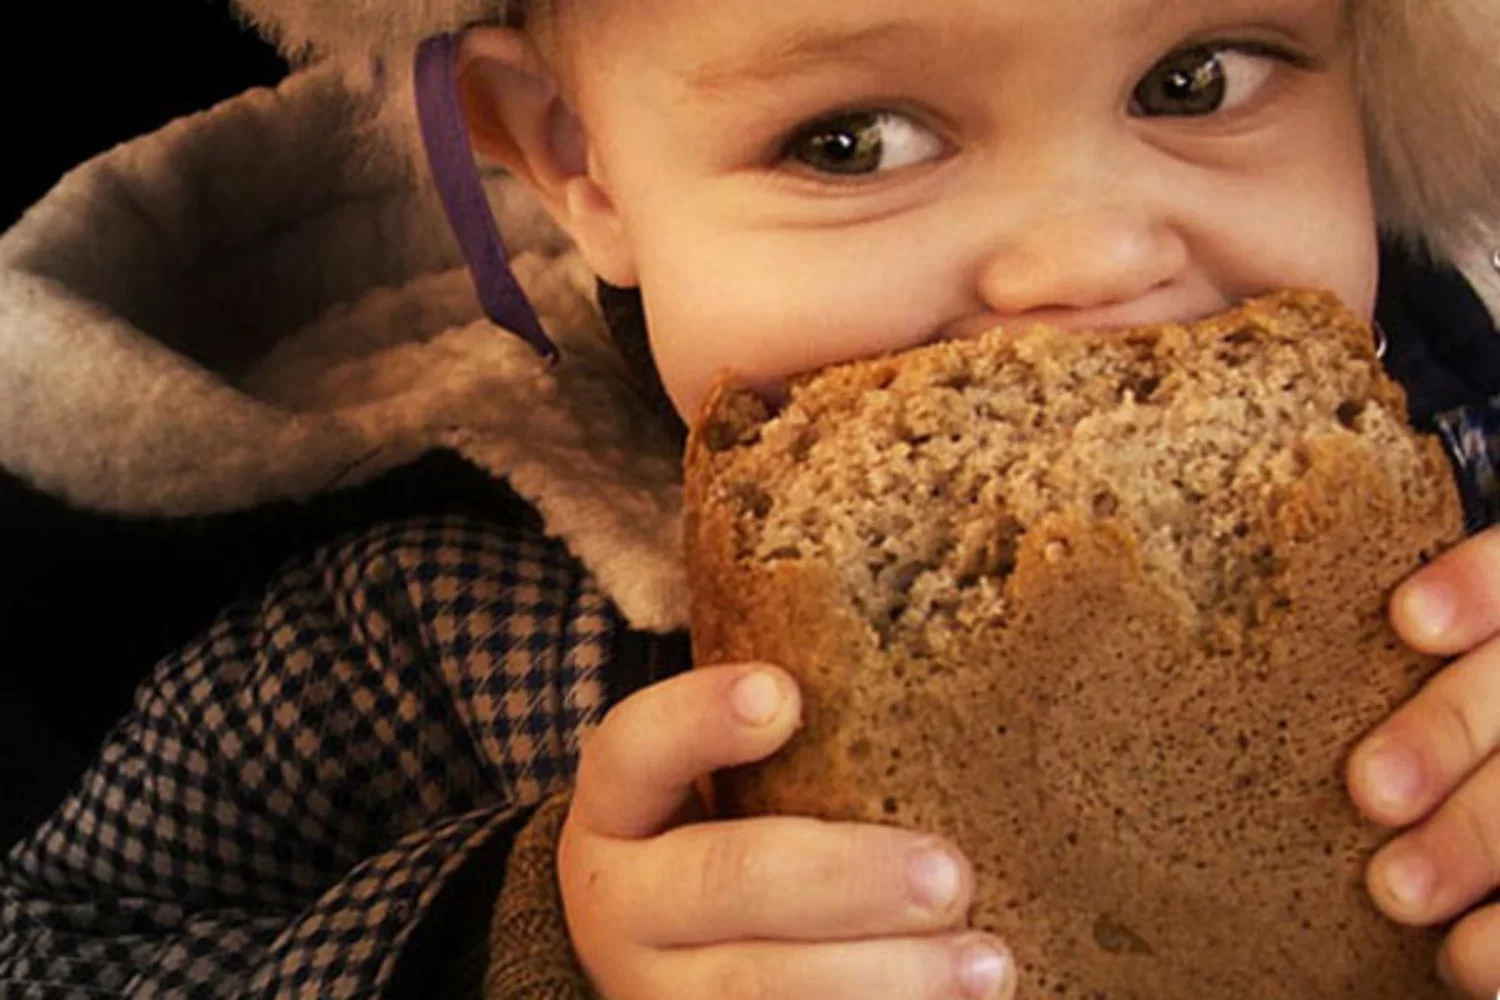 Человек есть много хлеба. Хлеб для детей. Ребенок ест хлеб. Мальчик с булкой хлеба. Откушенный хлеб.